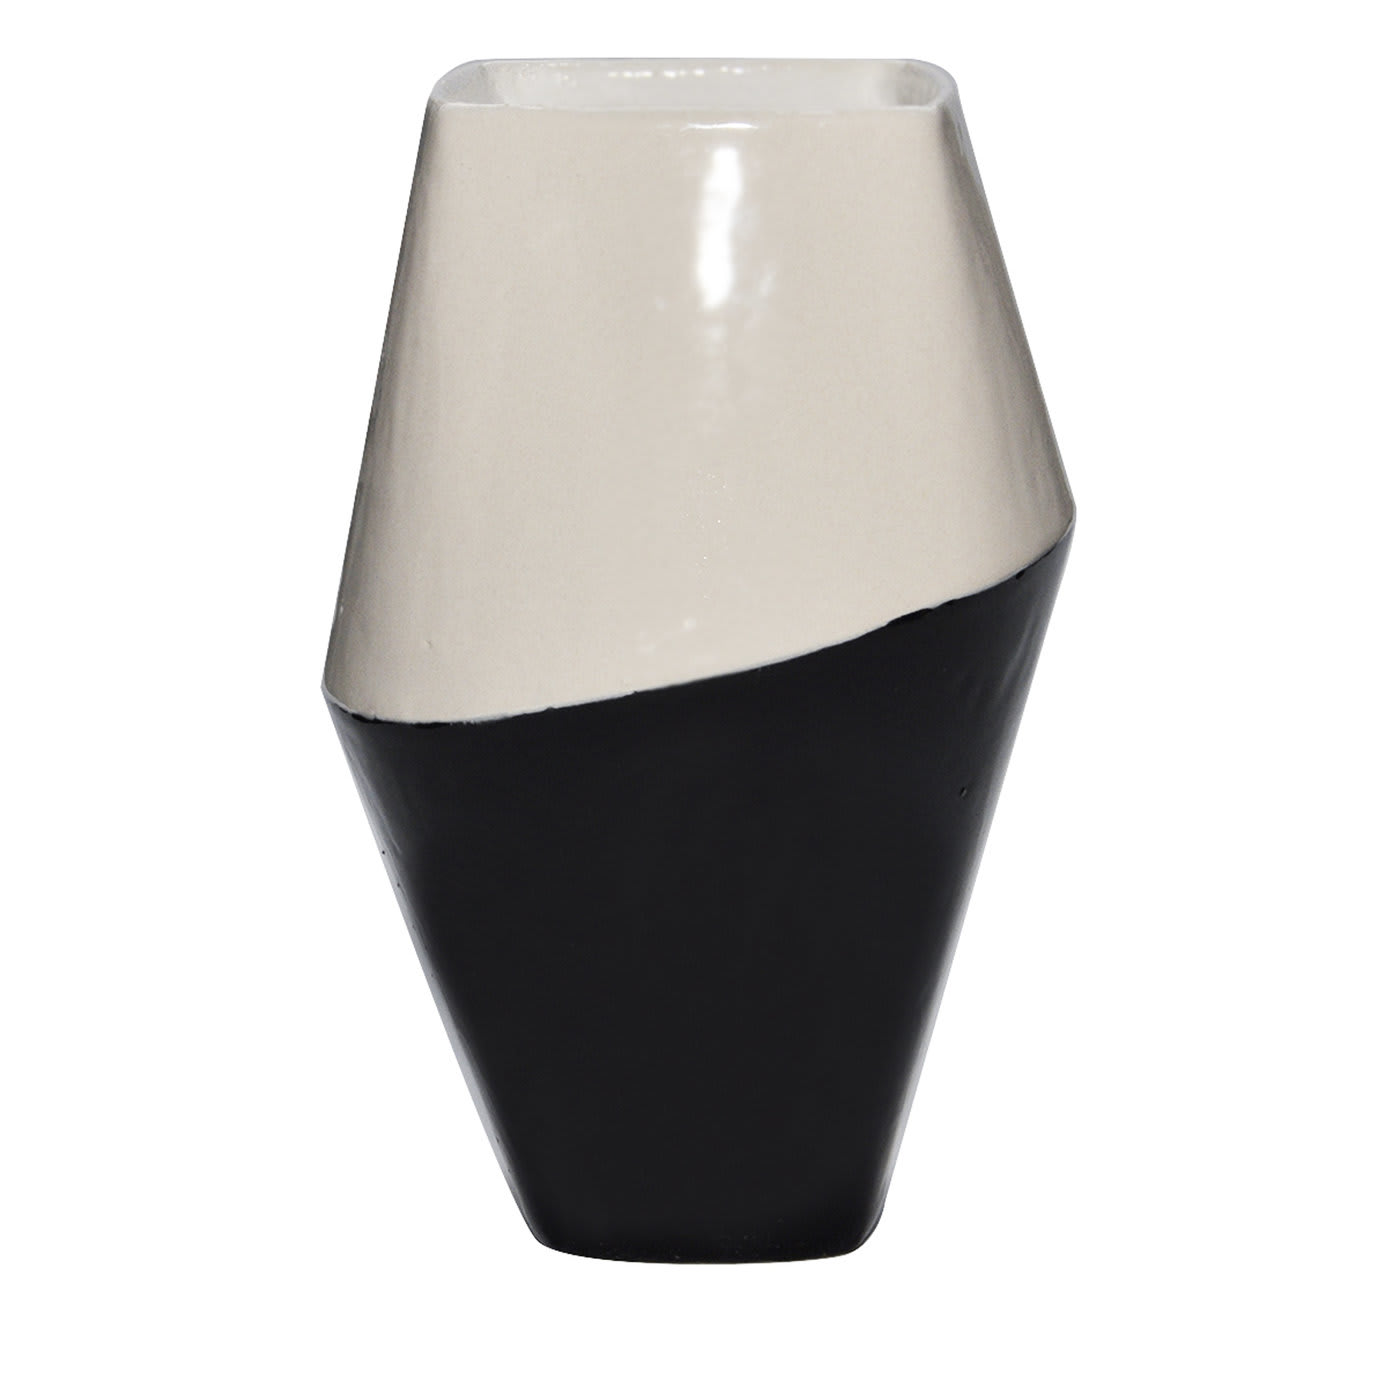 Anfora Vase White and Black - Caruzzo e Fabbro